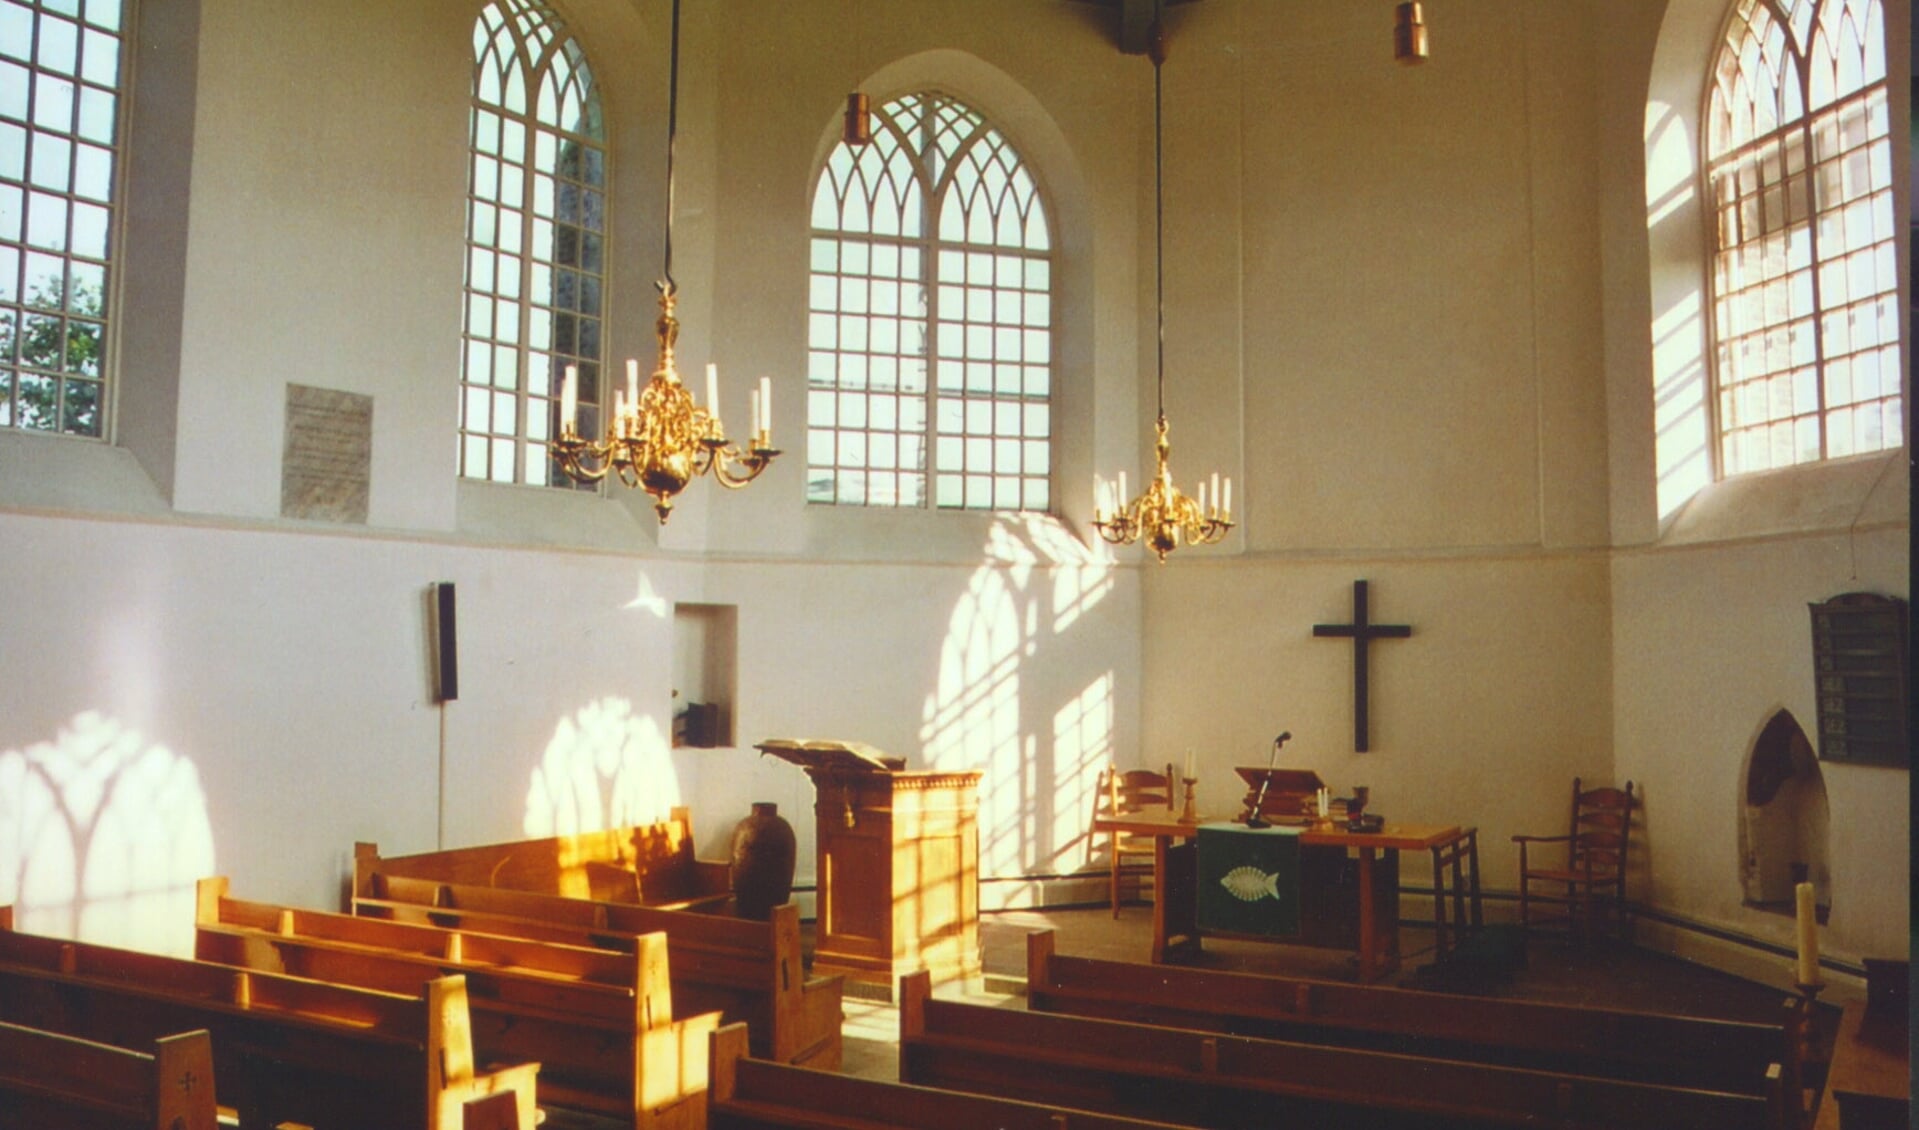 Het interieur van de kerk. (foto: Lian Steenhof)